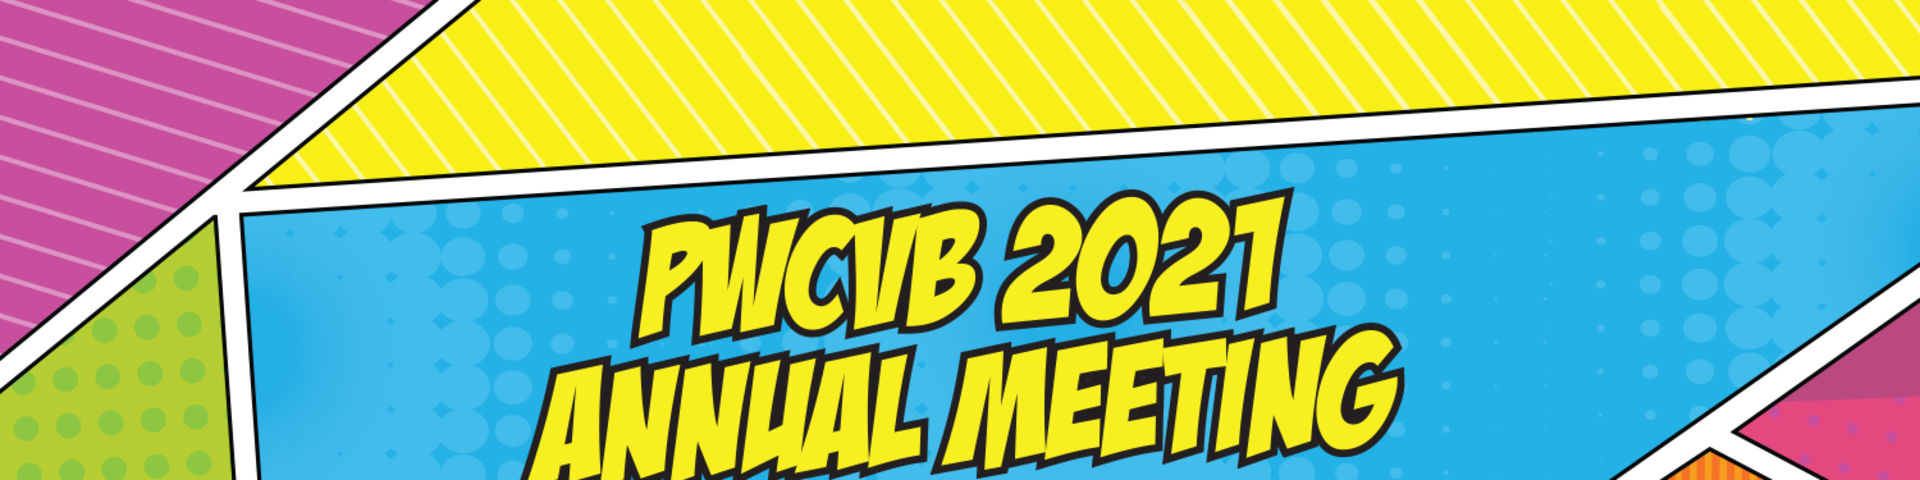 PWCVB 2021 Annual Meeting